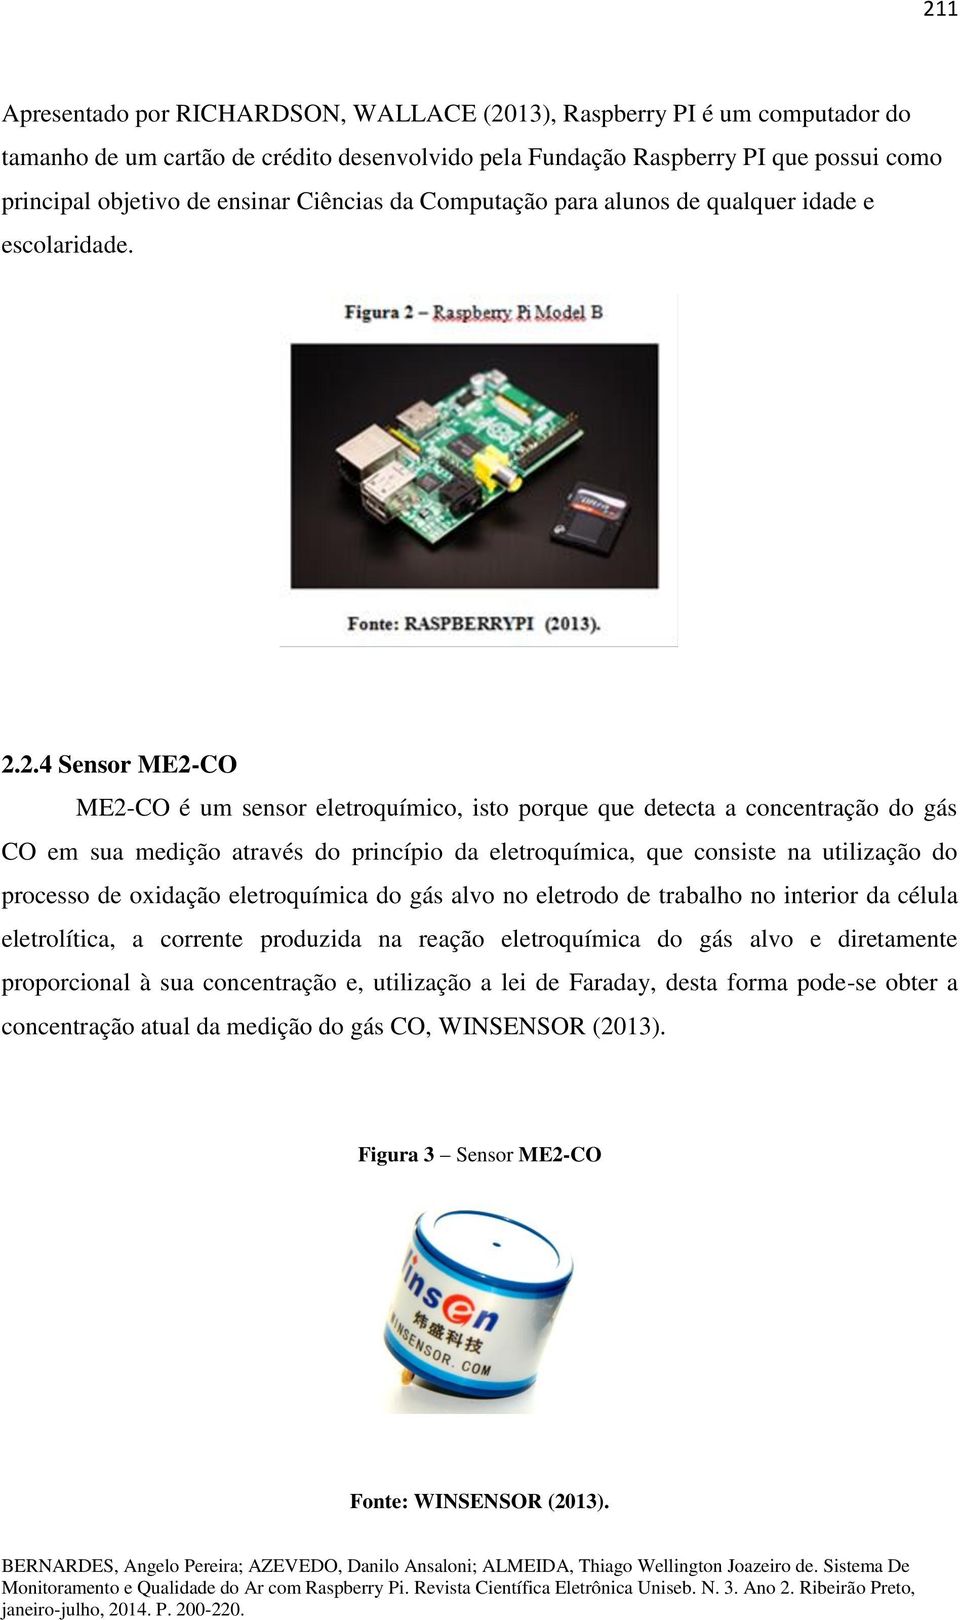 2.4 Sensor ME2-CO ME2-CO é um sensor eletroquímico, isto porque que detecta a concentração do gás CO em sua medição através do princípio da eletroquímica, que consiste na utilização do processo de